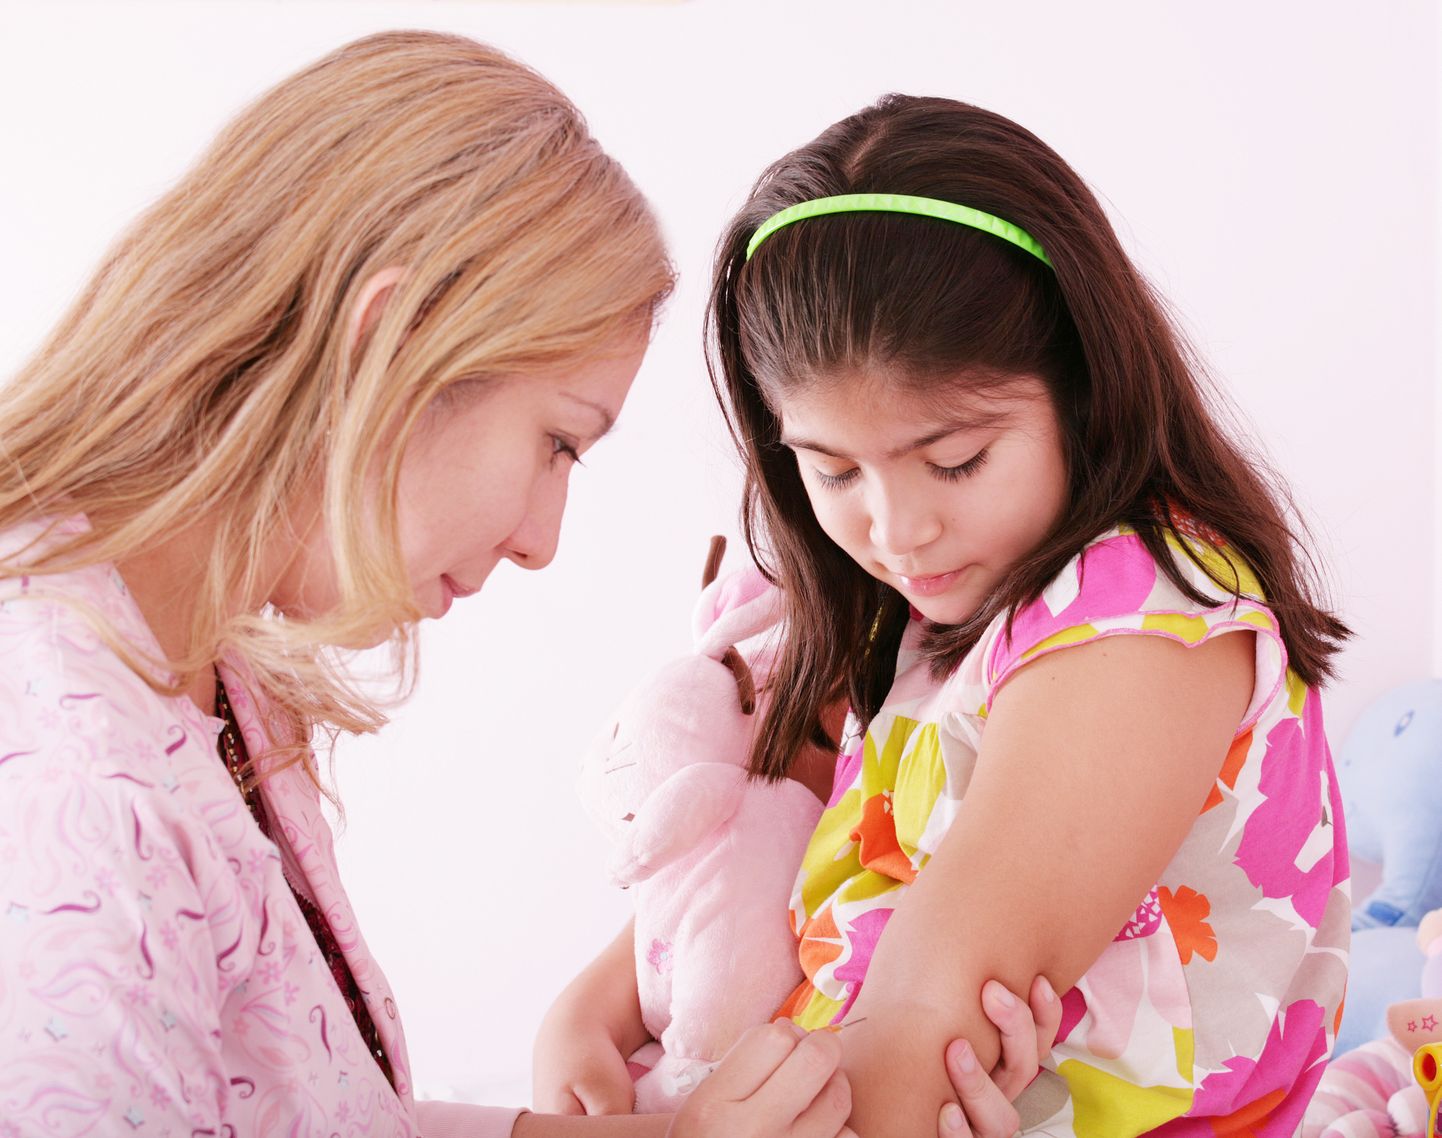 HPV-vaktsiini tehakse sellest aastast kõigile 12-14-aastastele tüdrukutele.